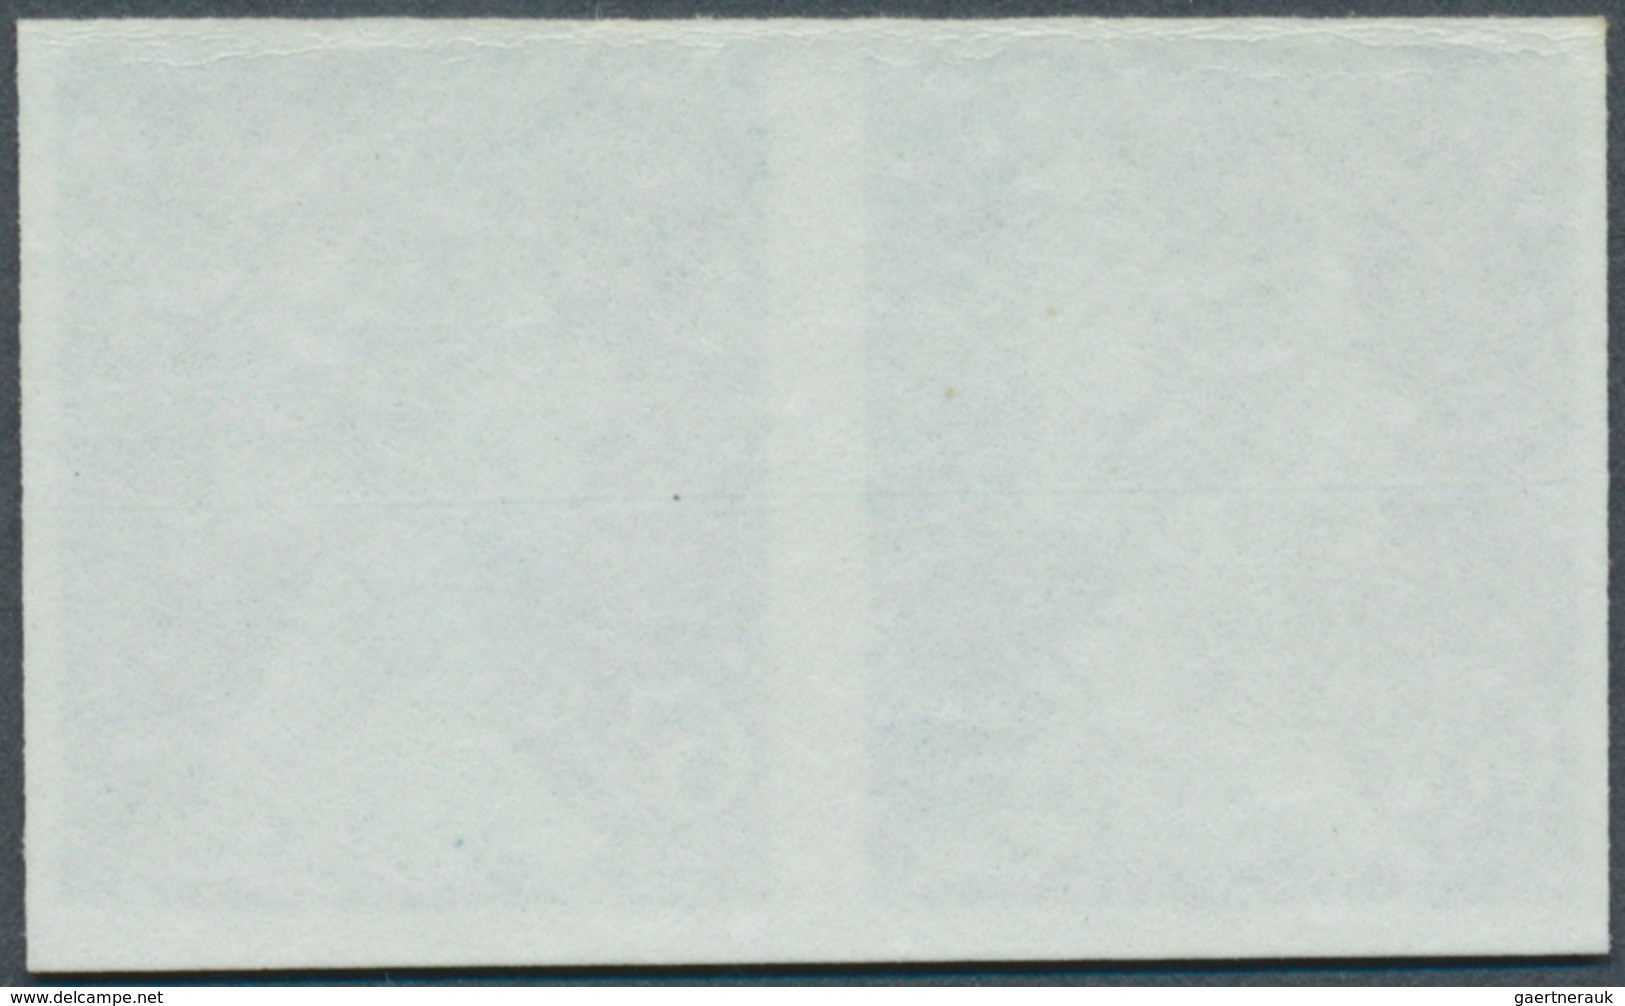 Großbritannien - Machin: 1975, 6½ P. Greenish Blue, Imperforated Horiz. Pair, Unmounted Mint. - Série 'Machin'